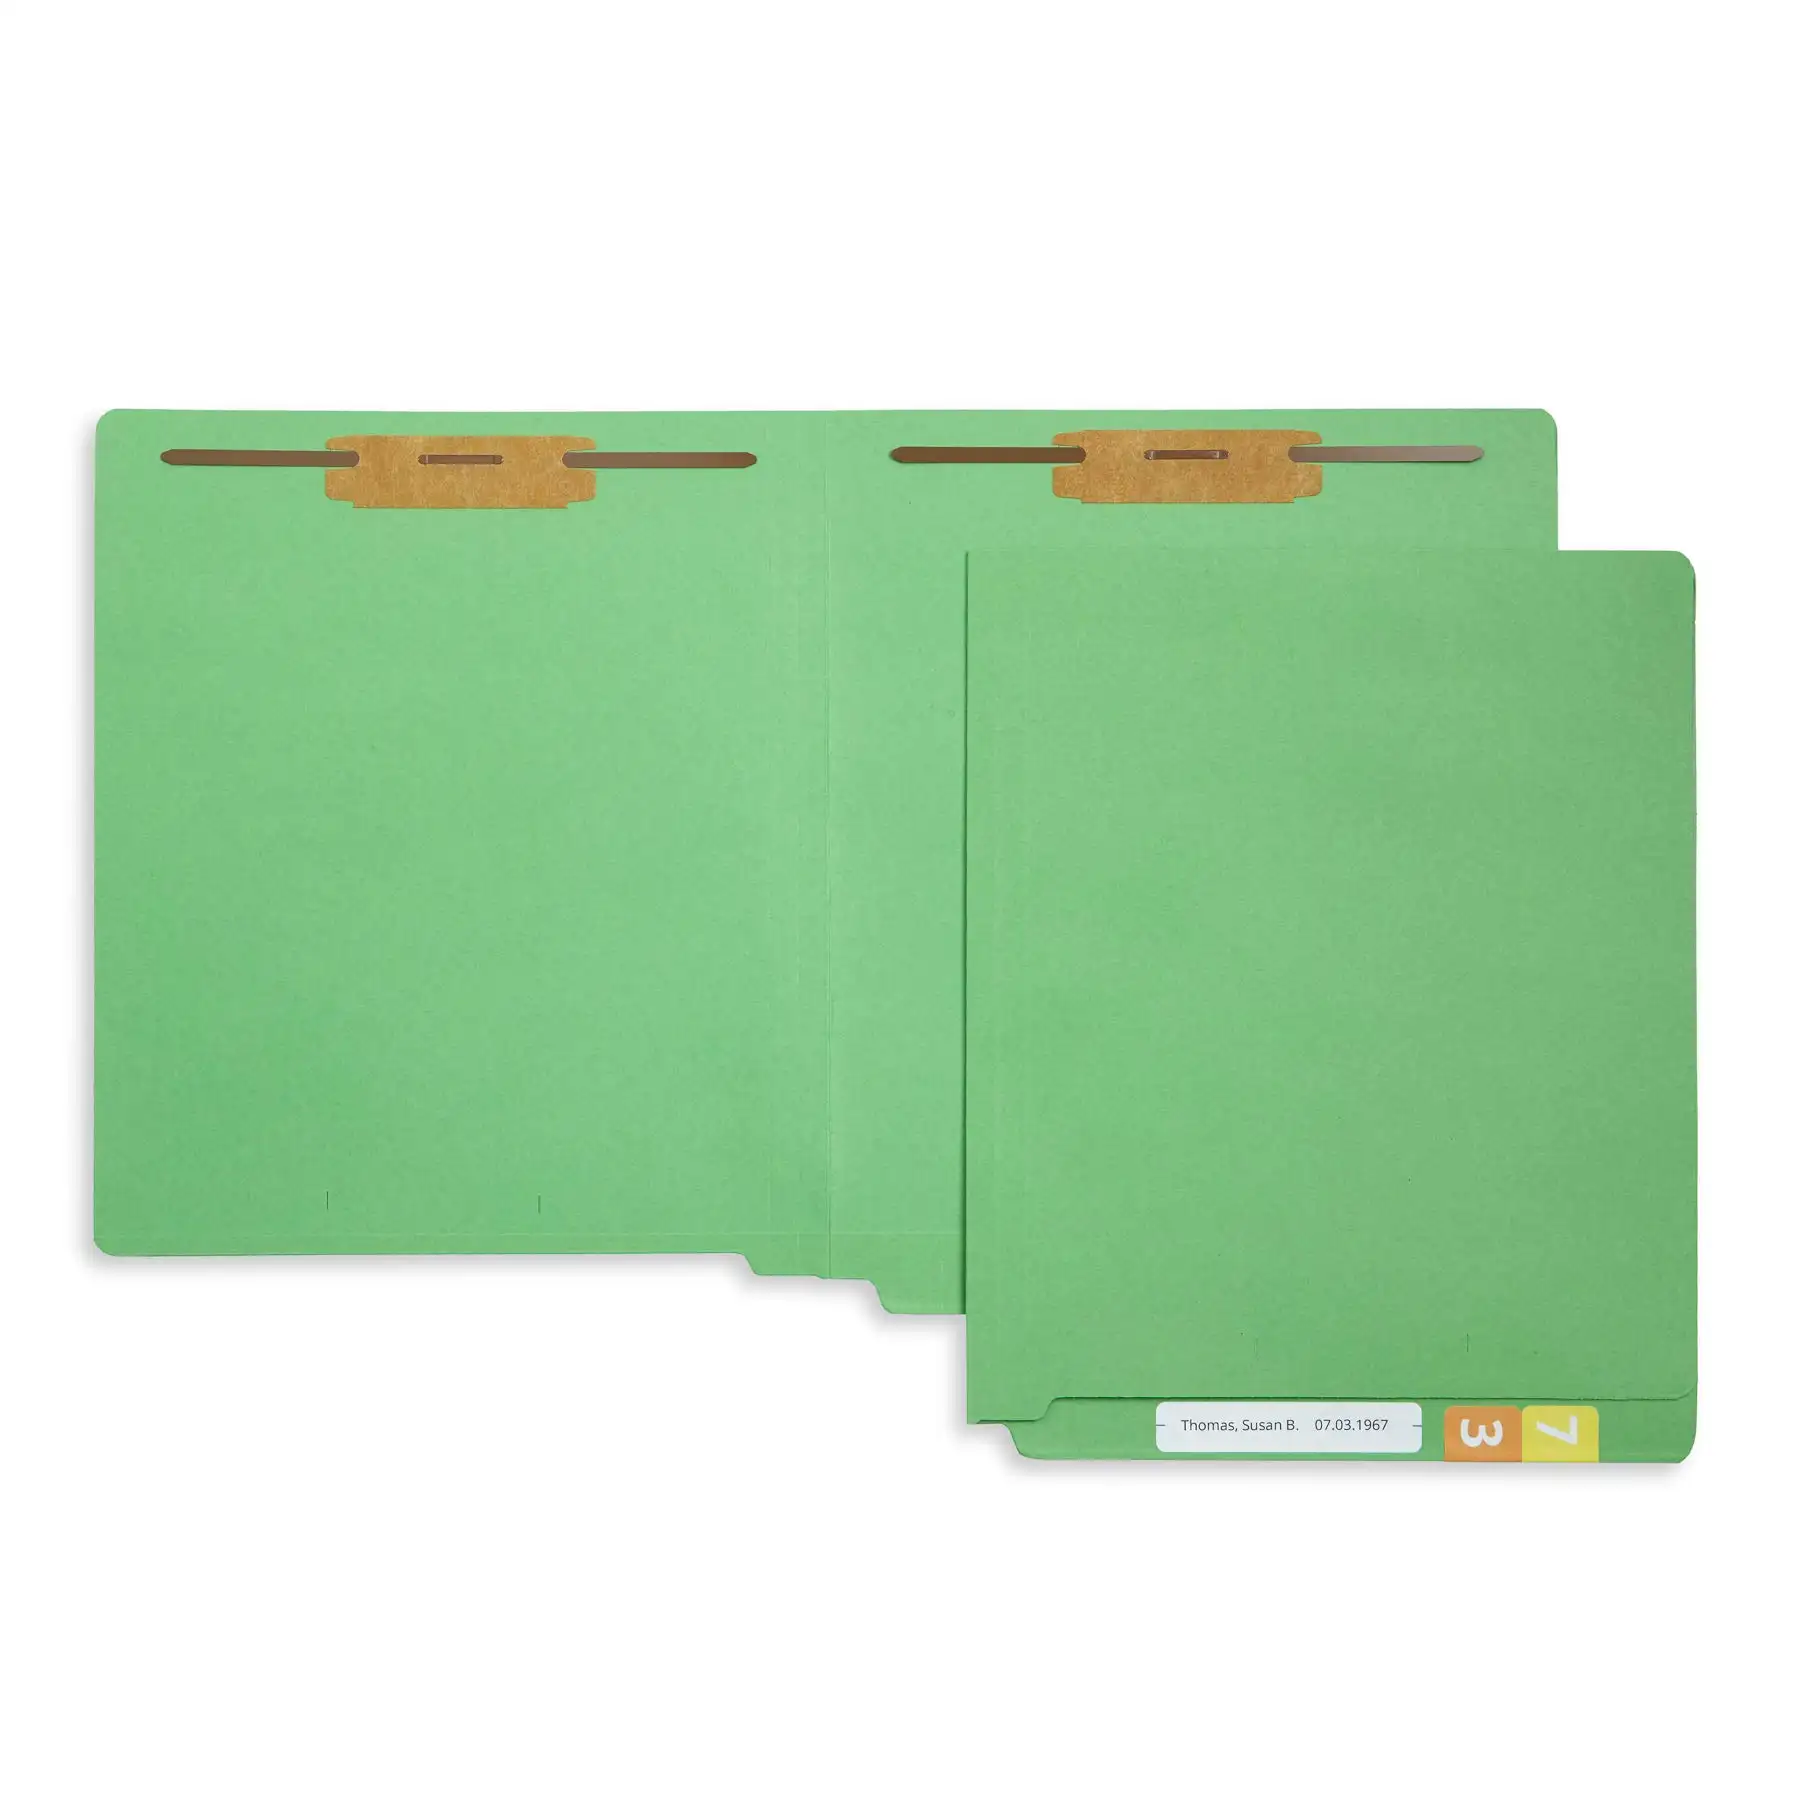 Folder de clasificación verde y gris, accesorio duradero de 2 clavijas, tamaño de las letras, diseñado para organizar archivos médicos estándar